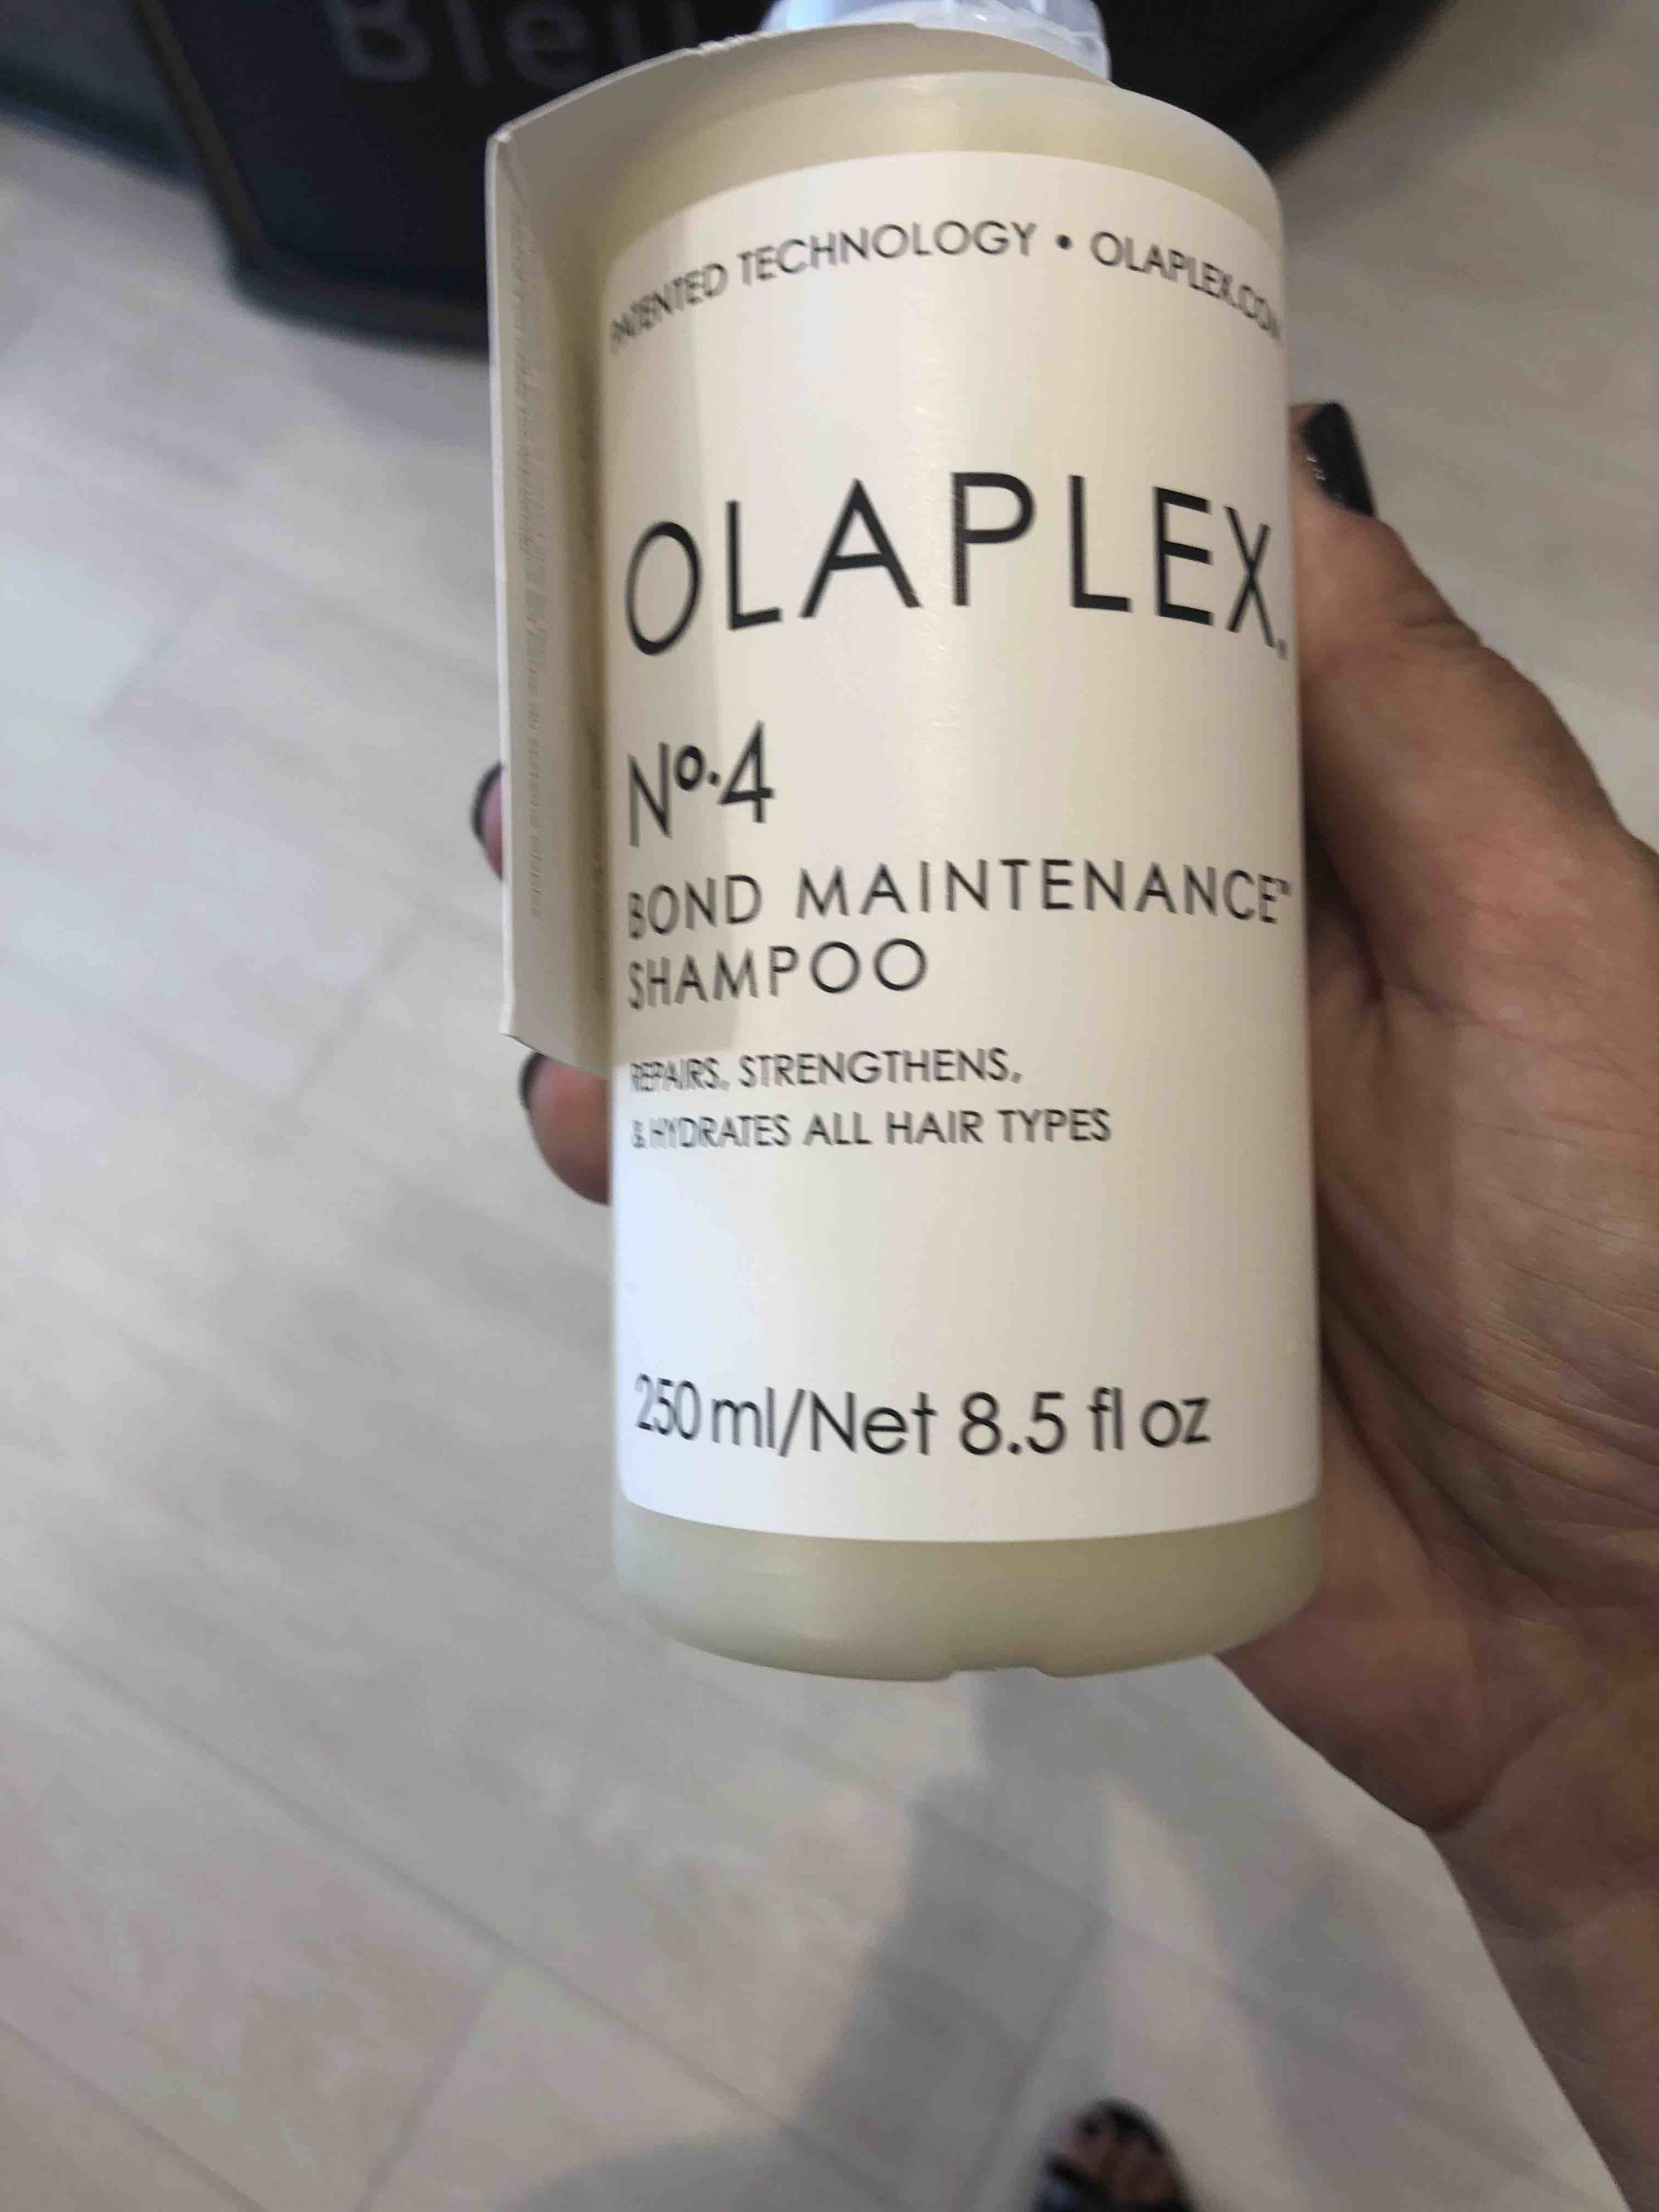 OLAPLEX - Bond maintenance - Shampoo